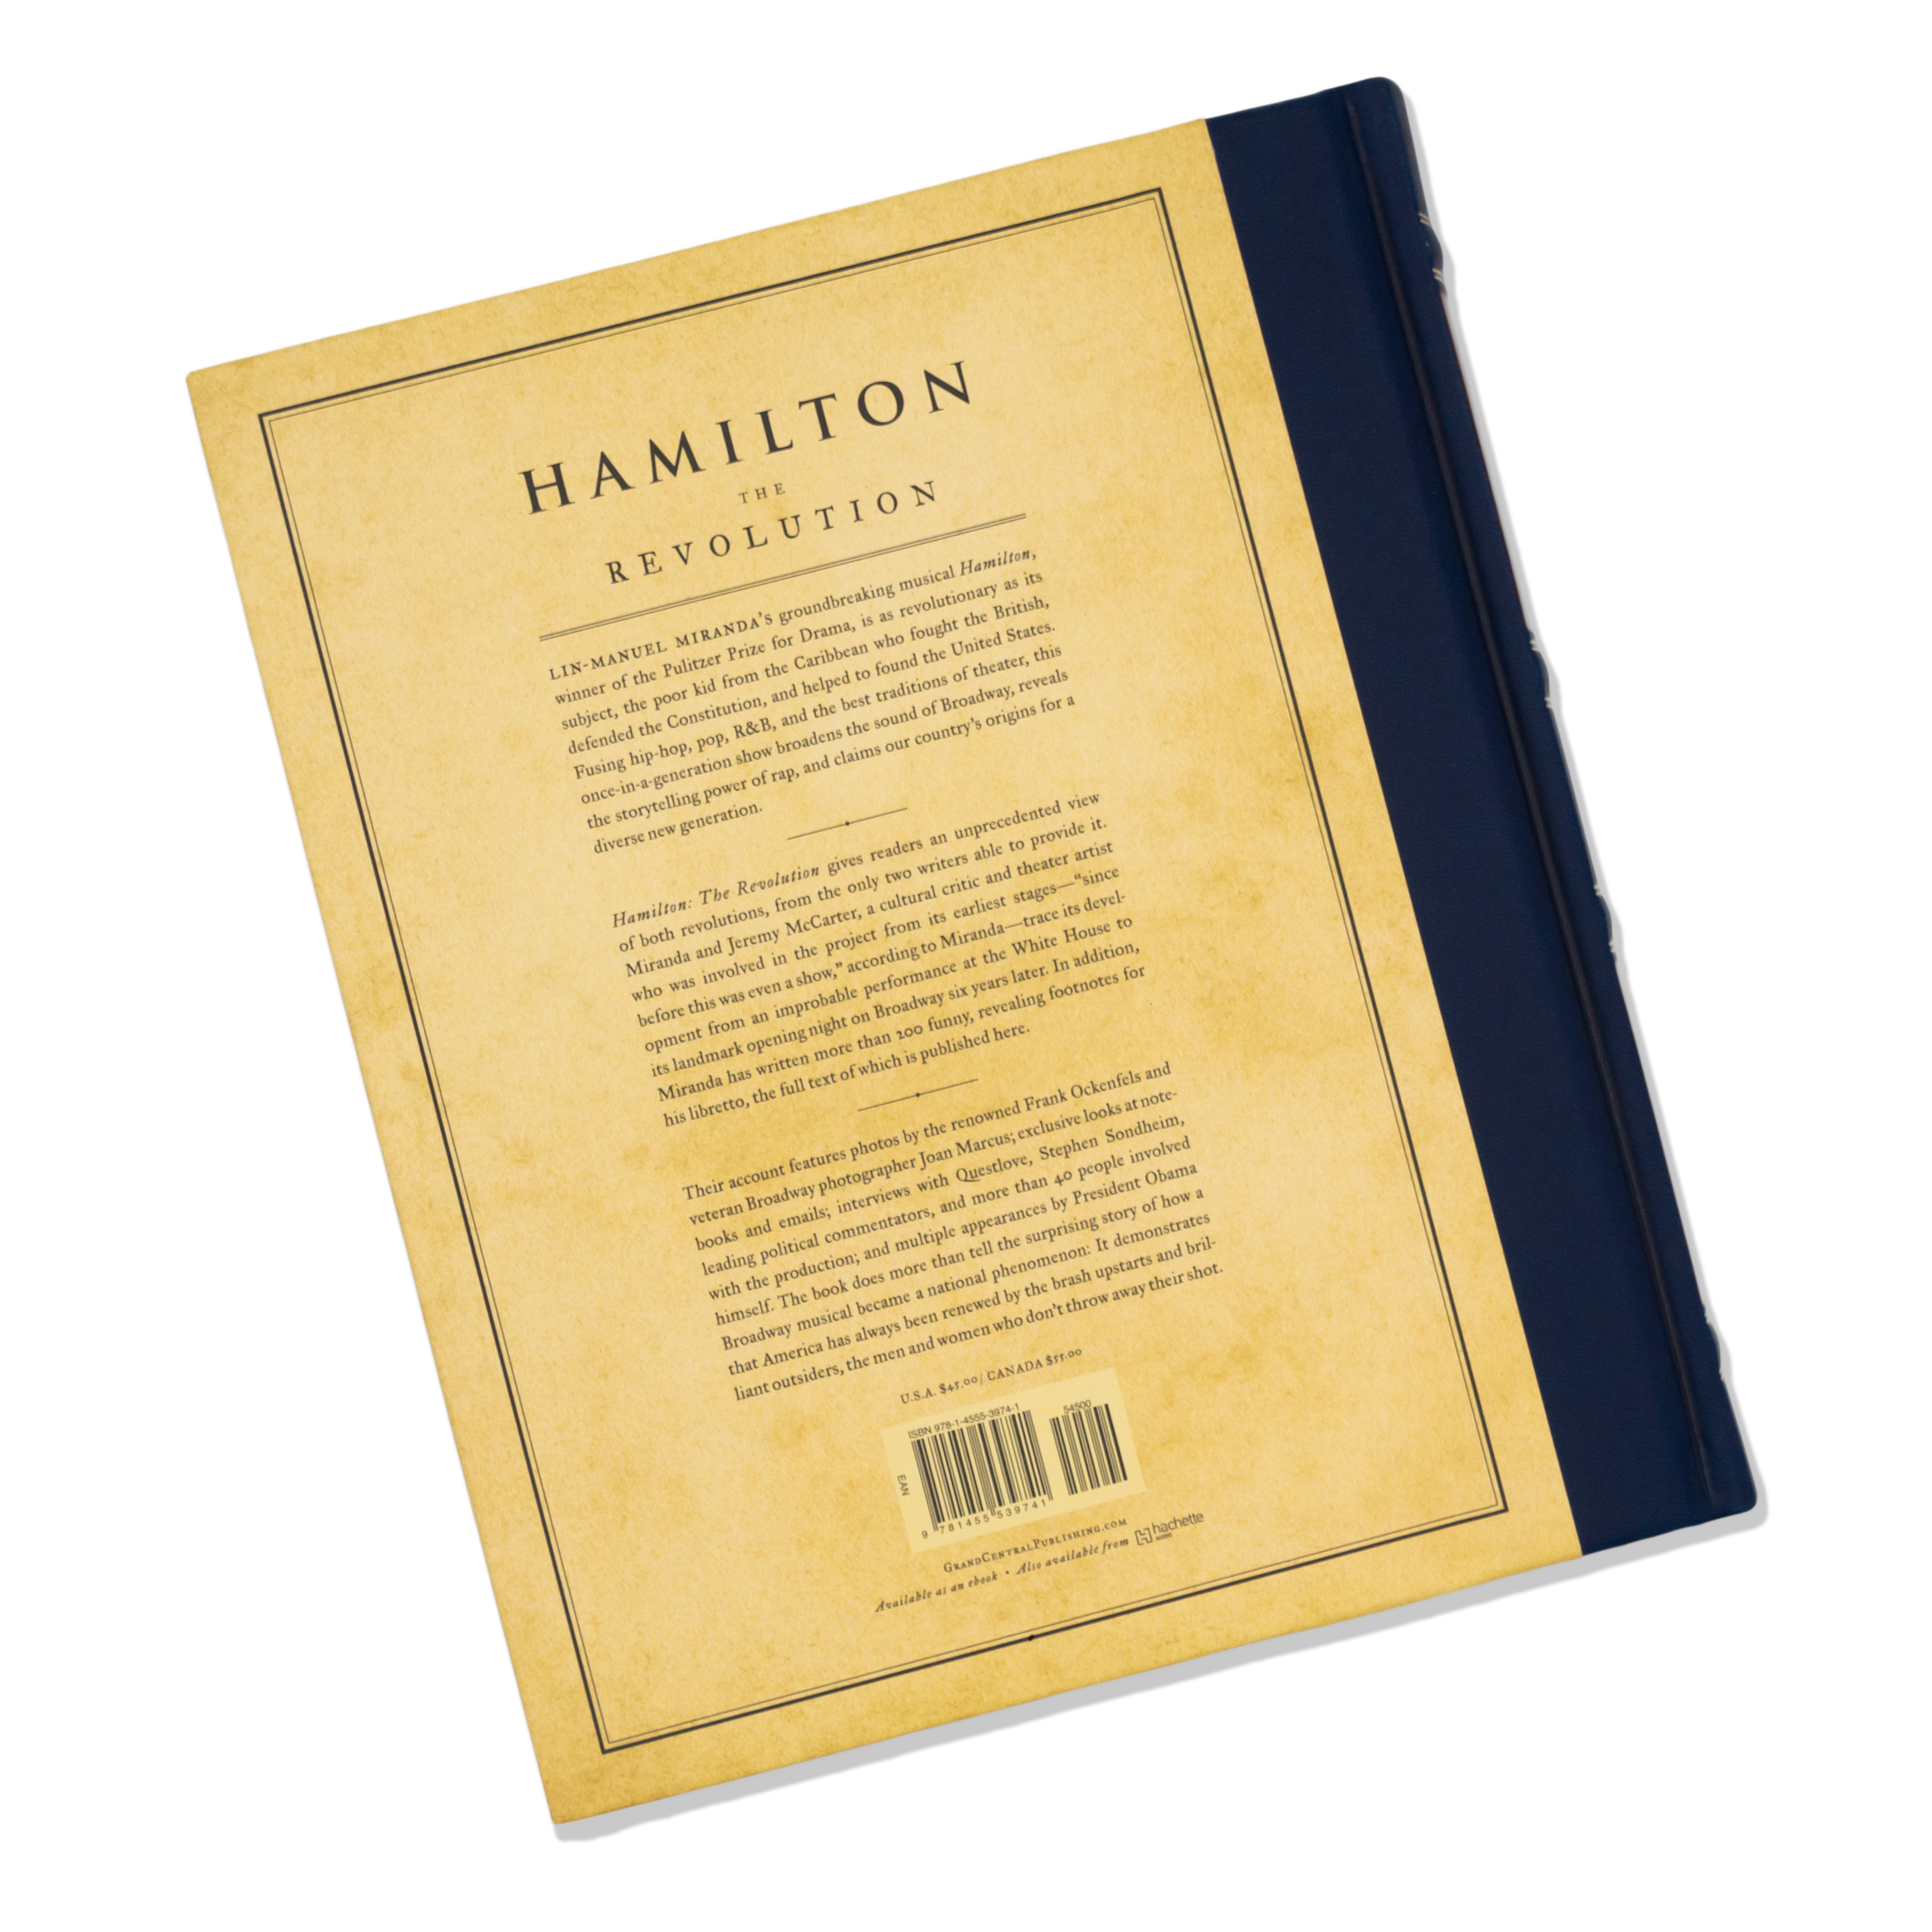 HAMILTON The Revolution Hardcover Book - Image 2